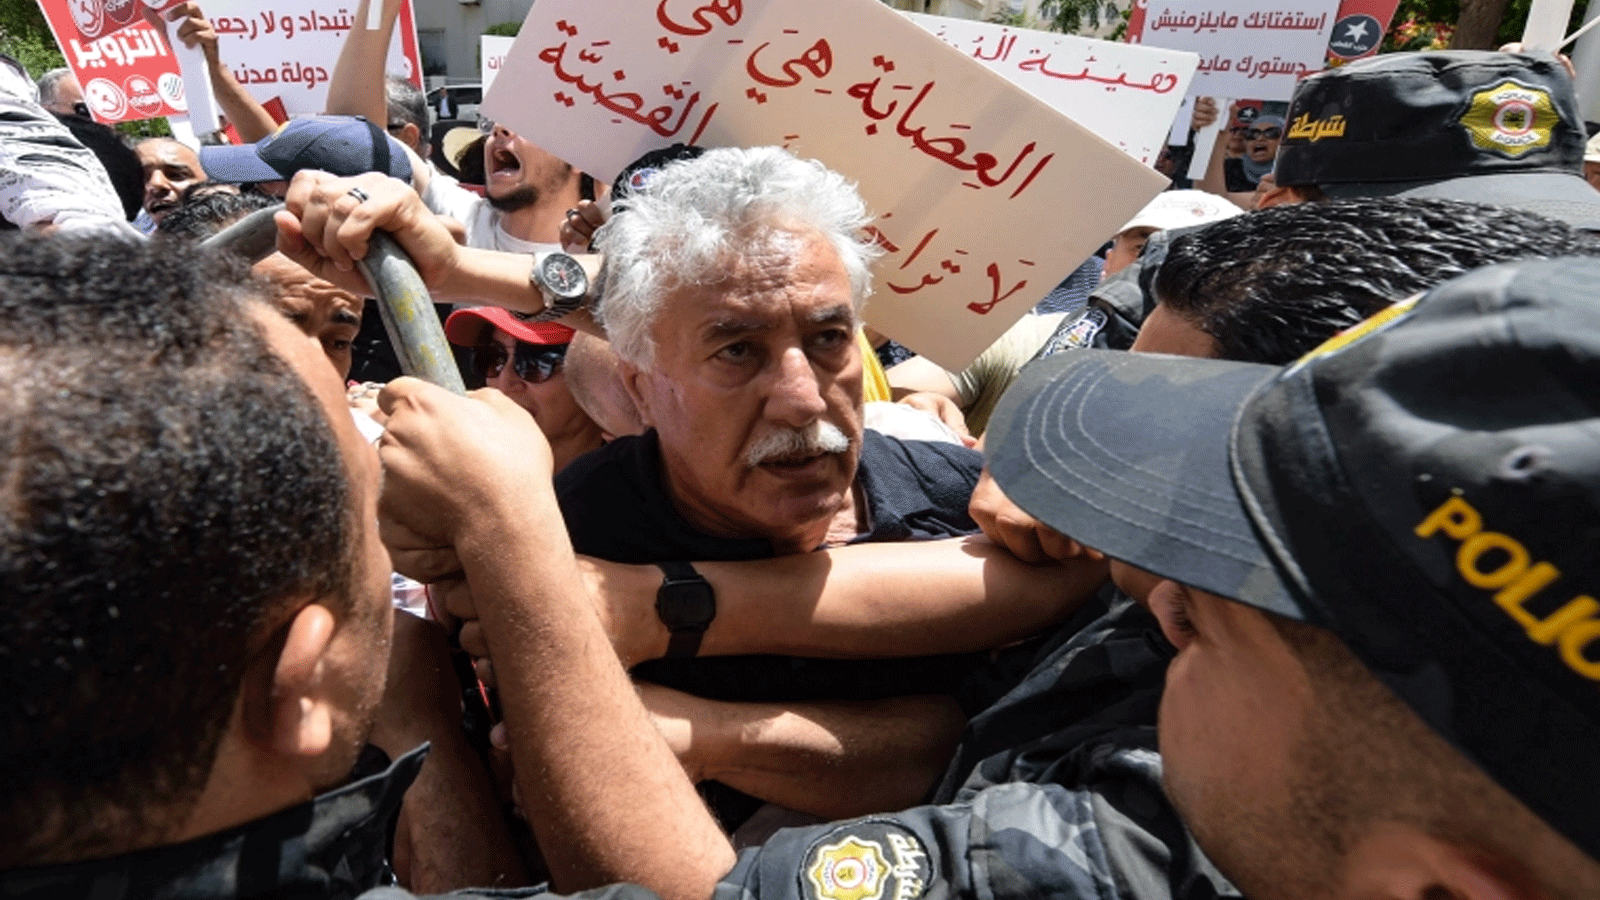 المتحدث باسم حزب العمال التونسي حمة الهمامي كان من بين المتظاهرين الذين أوقفتهم الشرطة السبت 4 حزيران\ يونيو2022